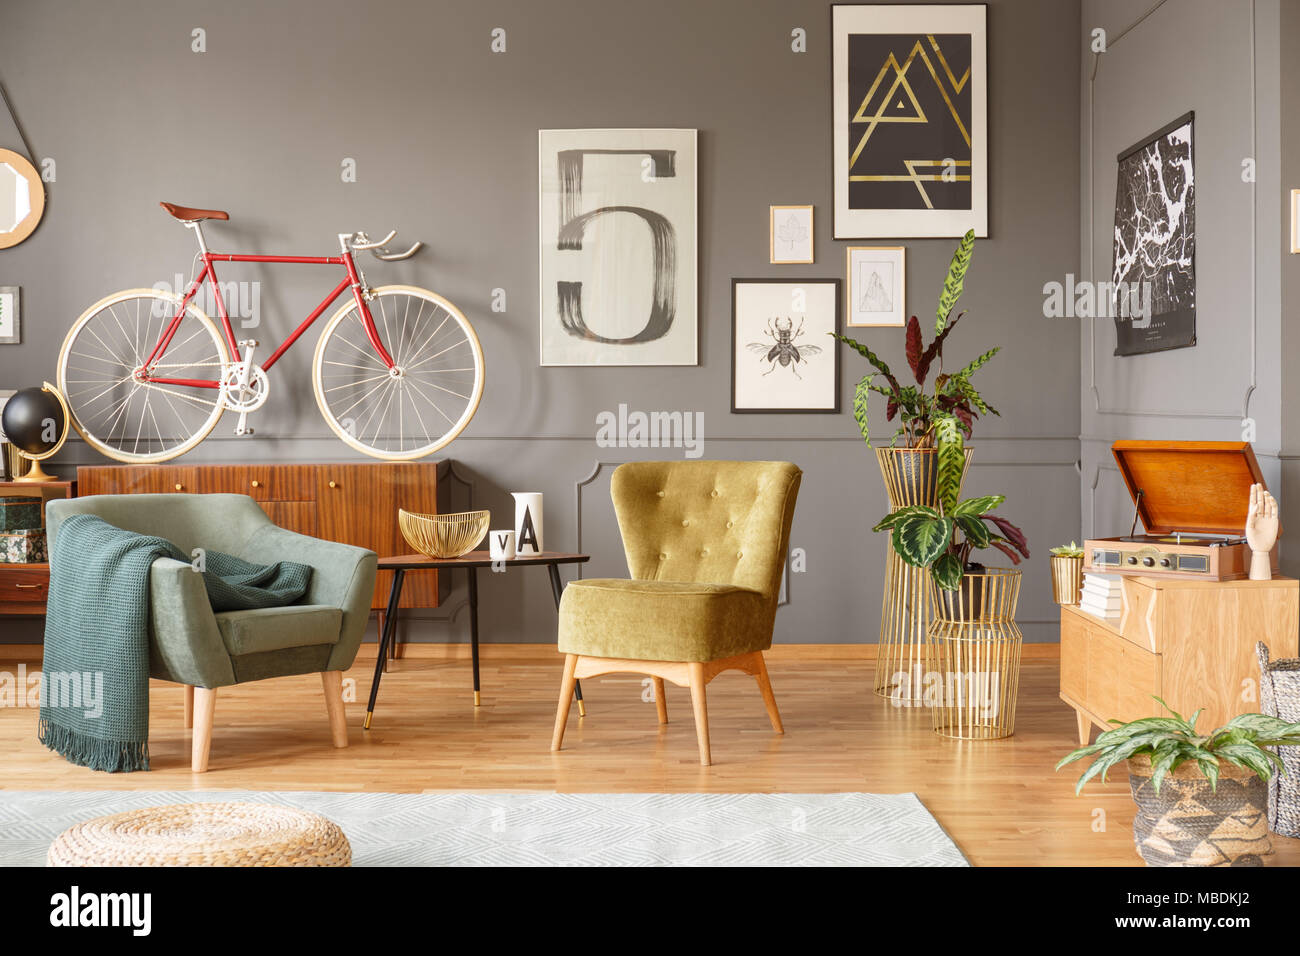 Green fauteuils, table avec un bol d'or, des plantes, des affiches et du vélo dans un salon intérieur Banque D'Images